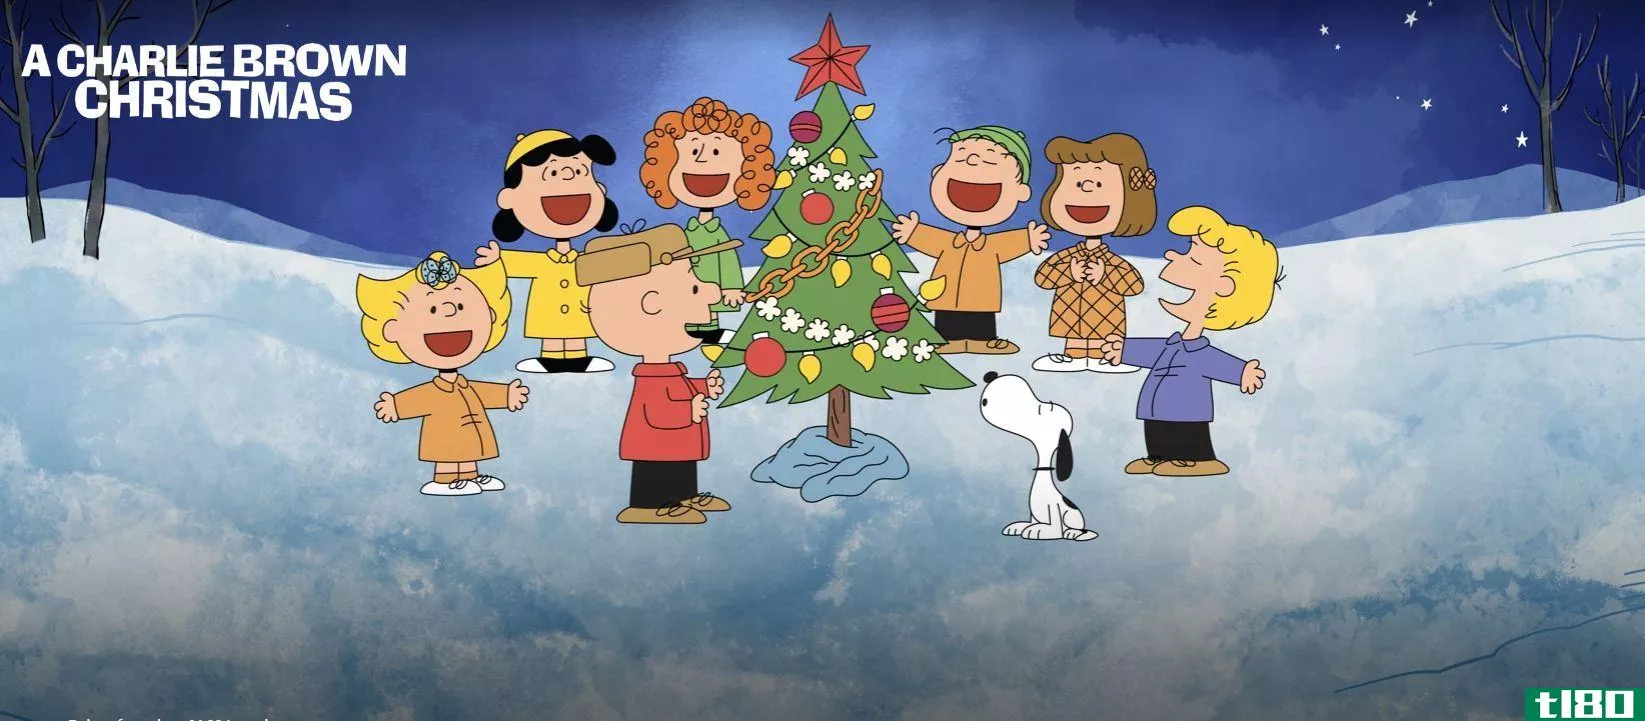 A Charlie Brown Christmas on Apple TV+